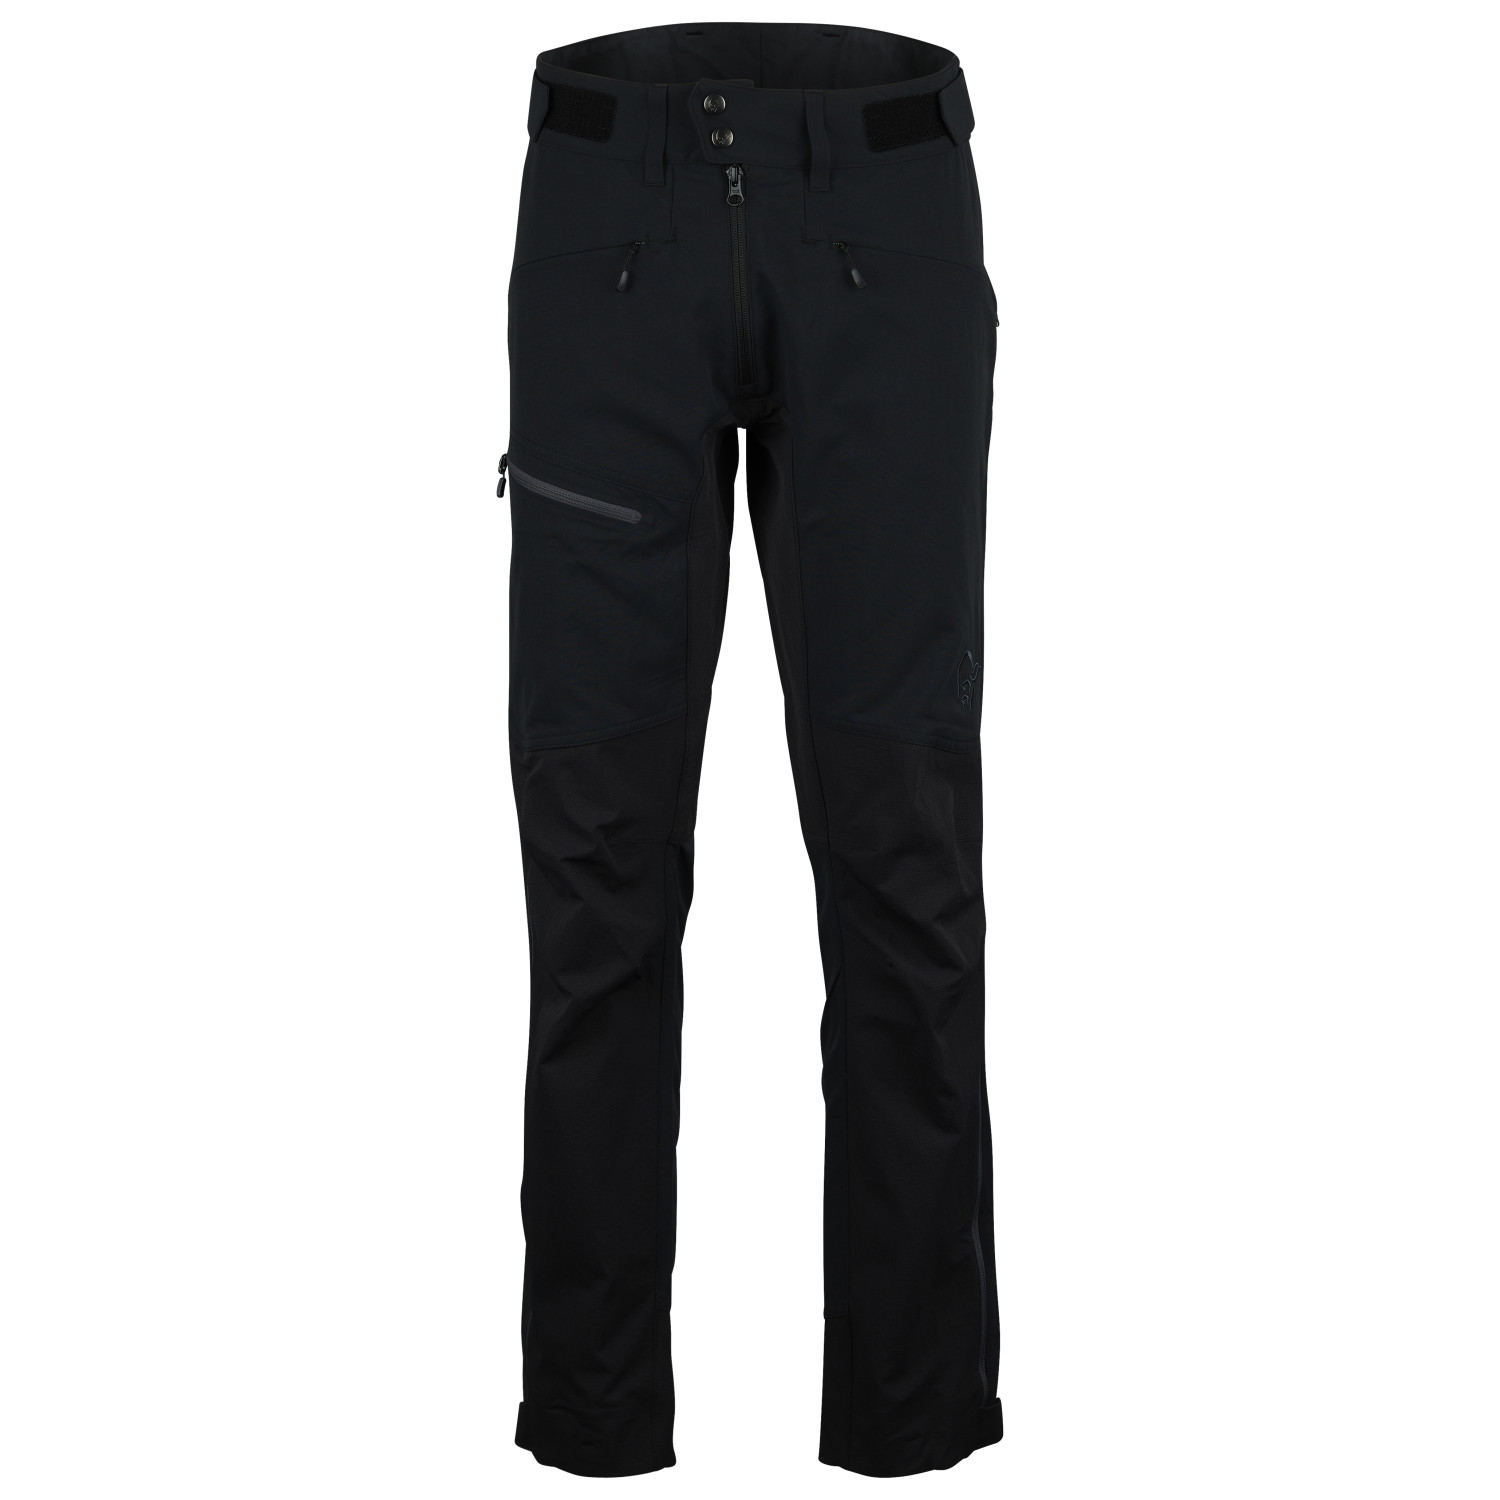 Трекинговые брюки Norrøna Falketind Flex1 Heavy Duty, цвет Caviar/Zip Grey